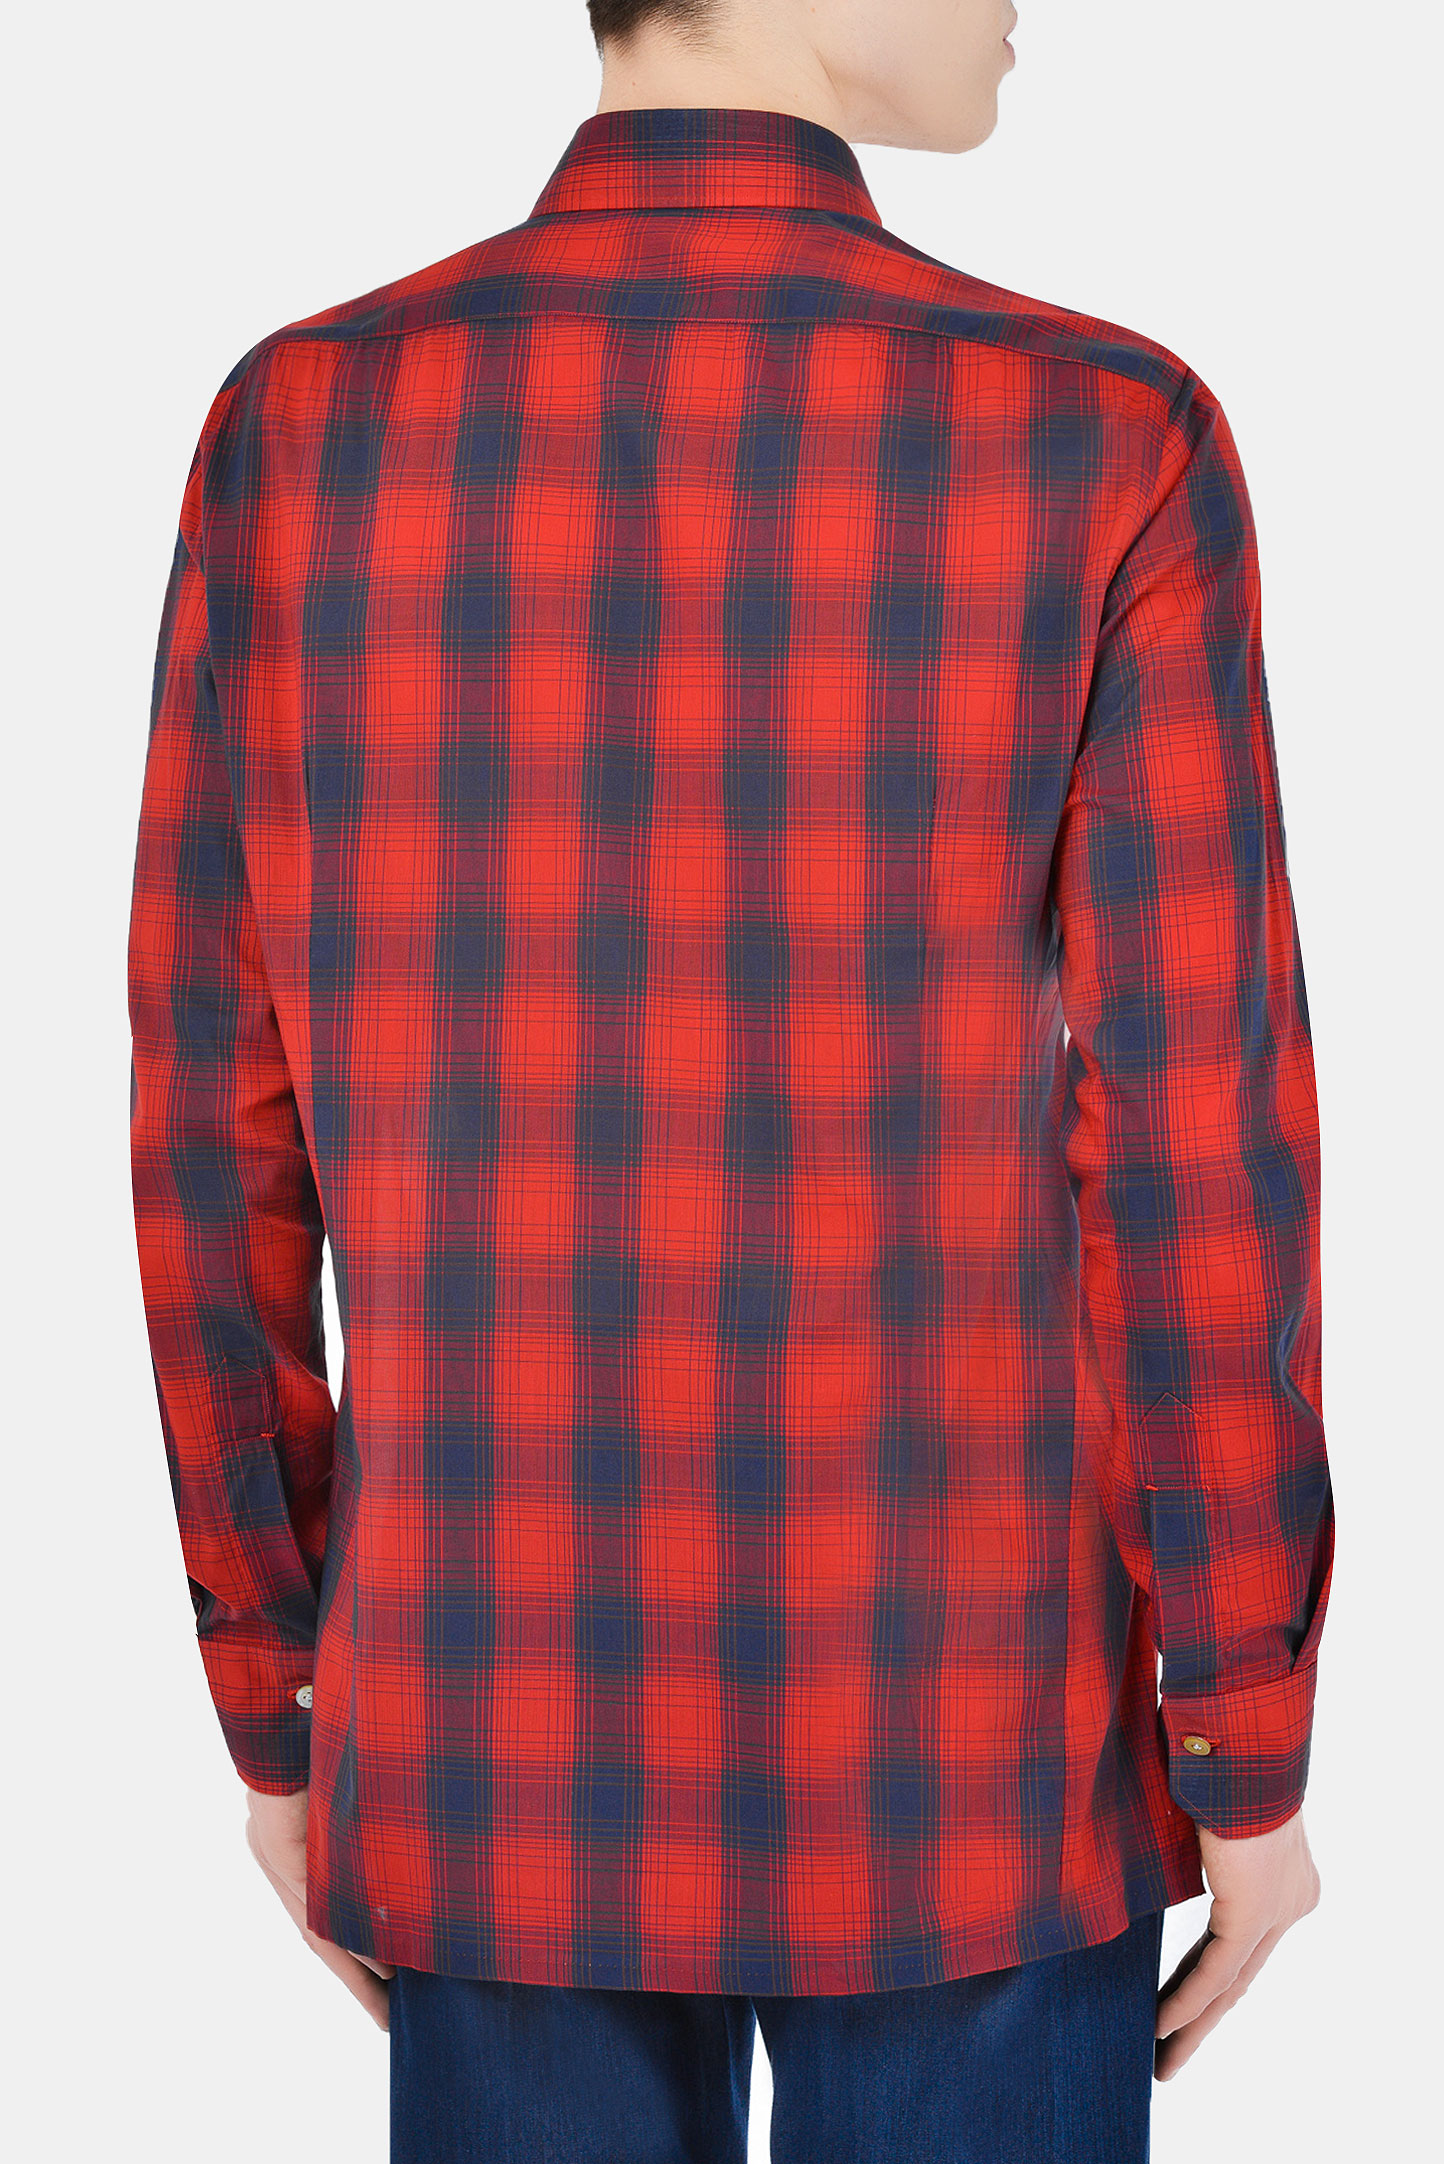 Рубашка KITON UMCNERH076150, цвет: Красный, Мужской